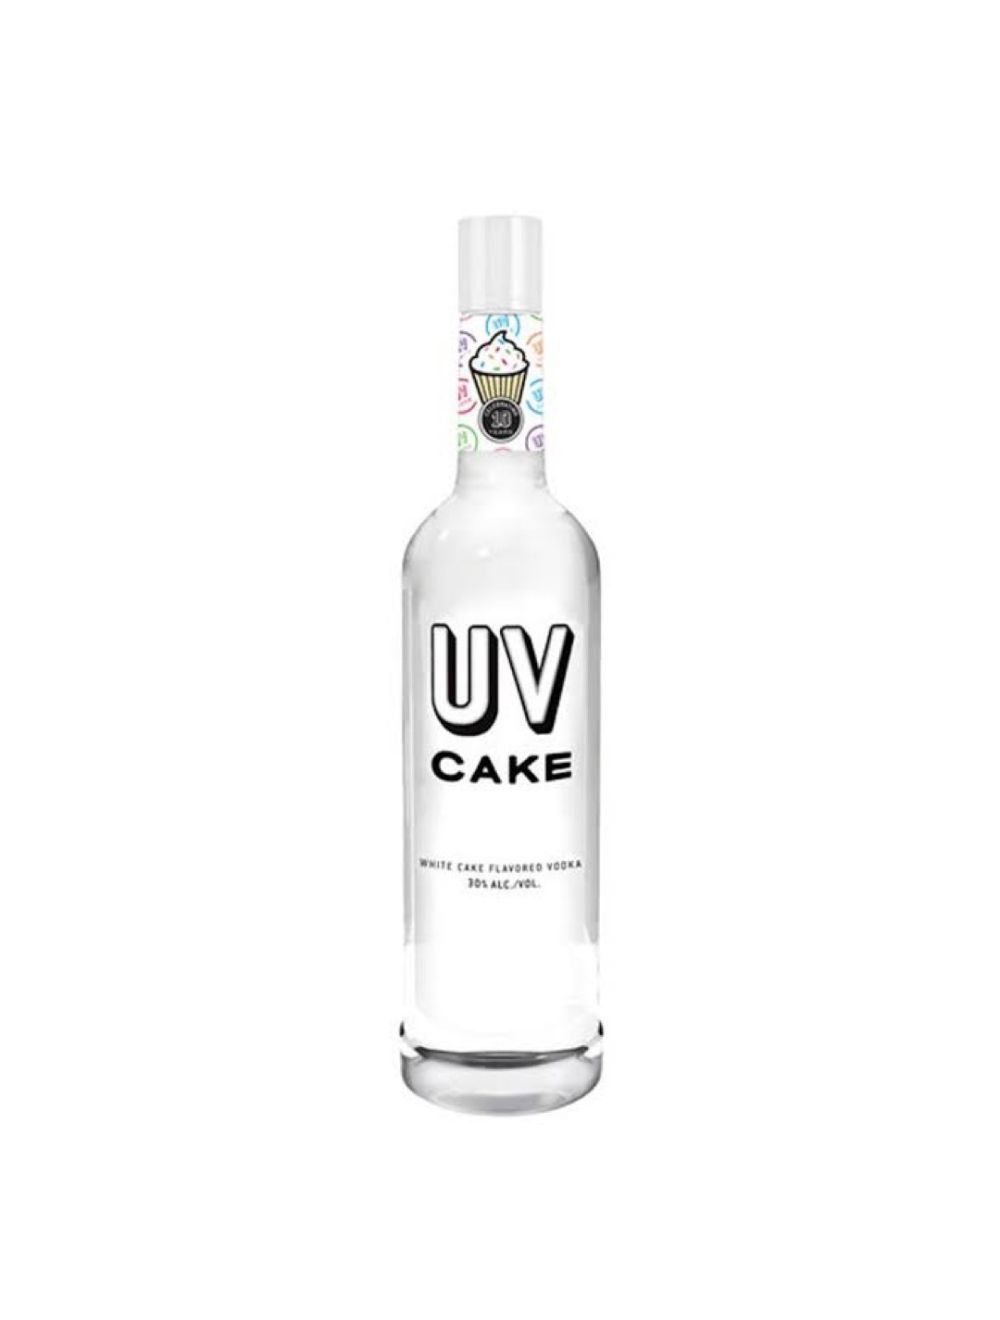 Uv Cake Vodka 750ml Mybottle